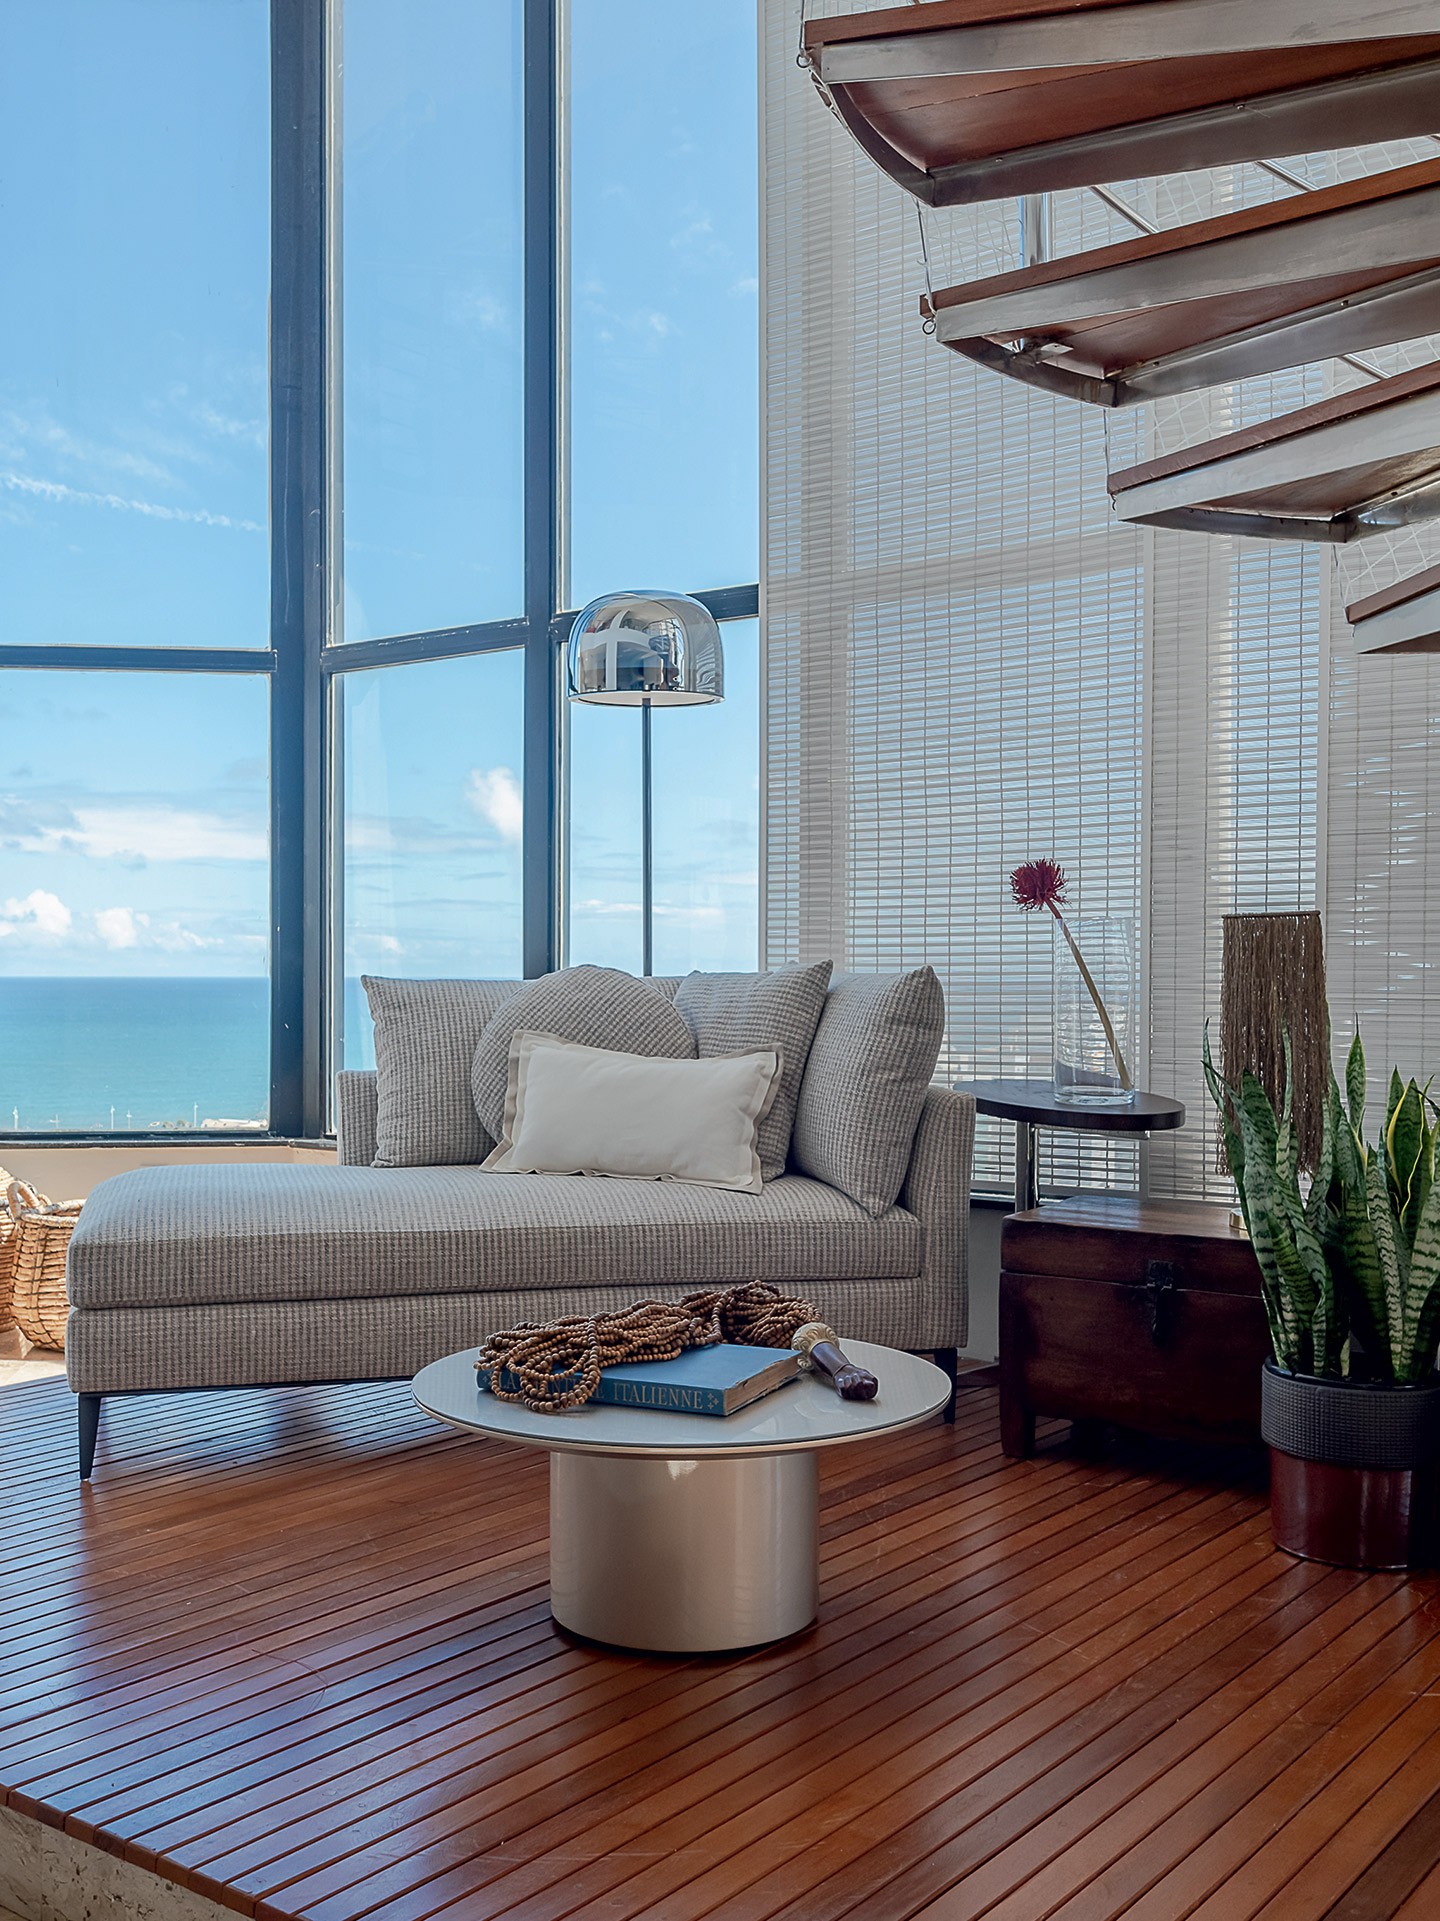 Com vista para o mar, apartamento é convite para relaxar (Foto: Wesley Diego Emes)